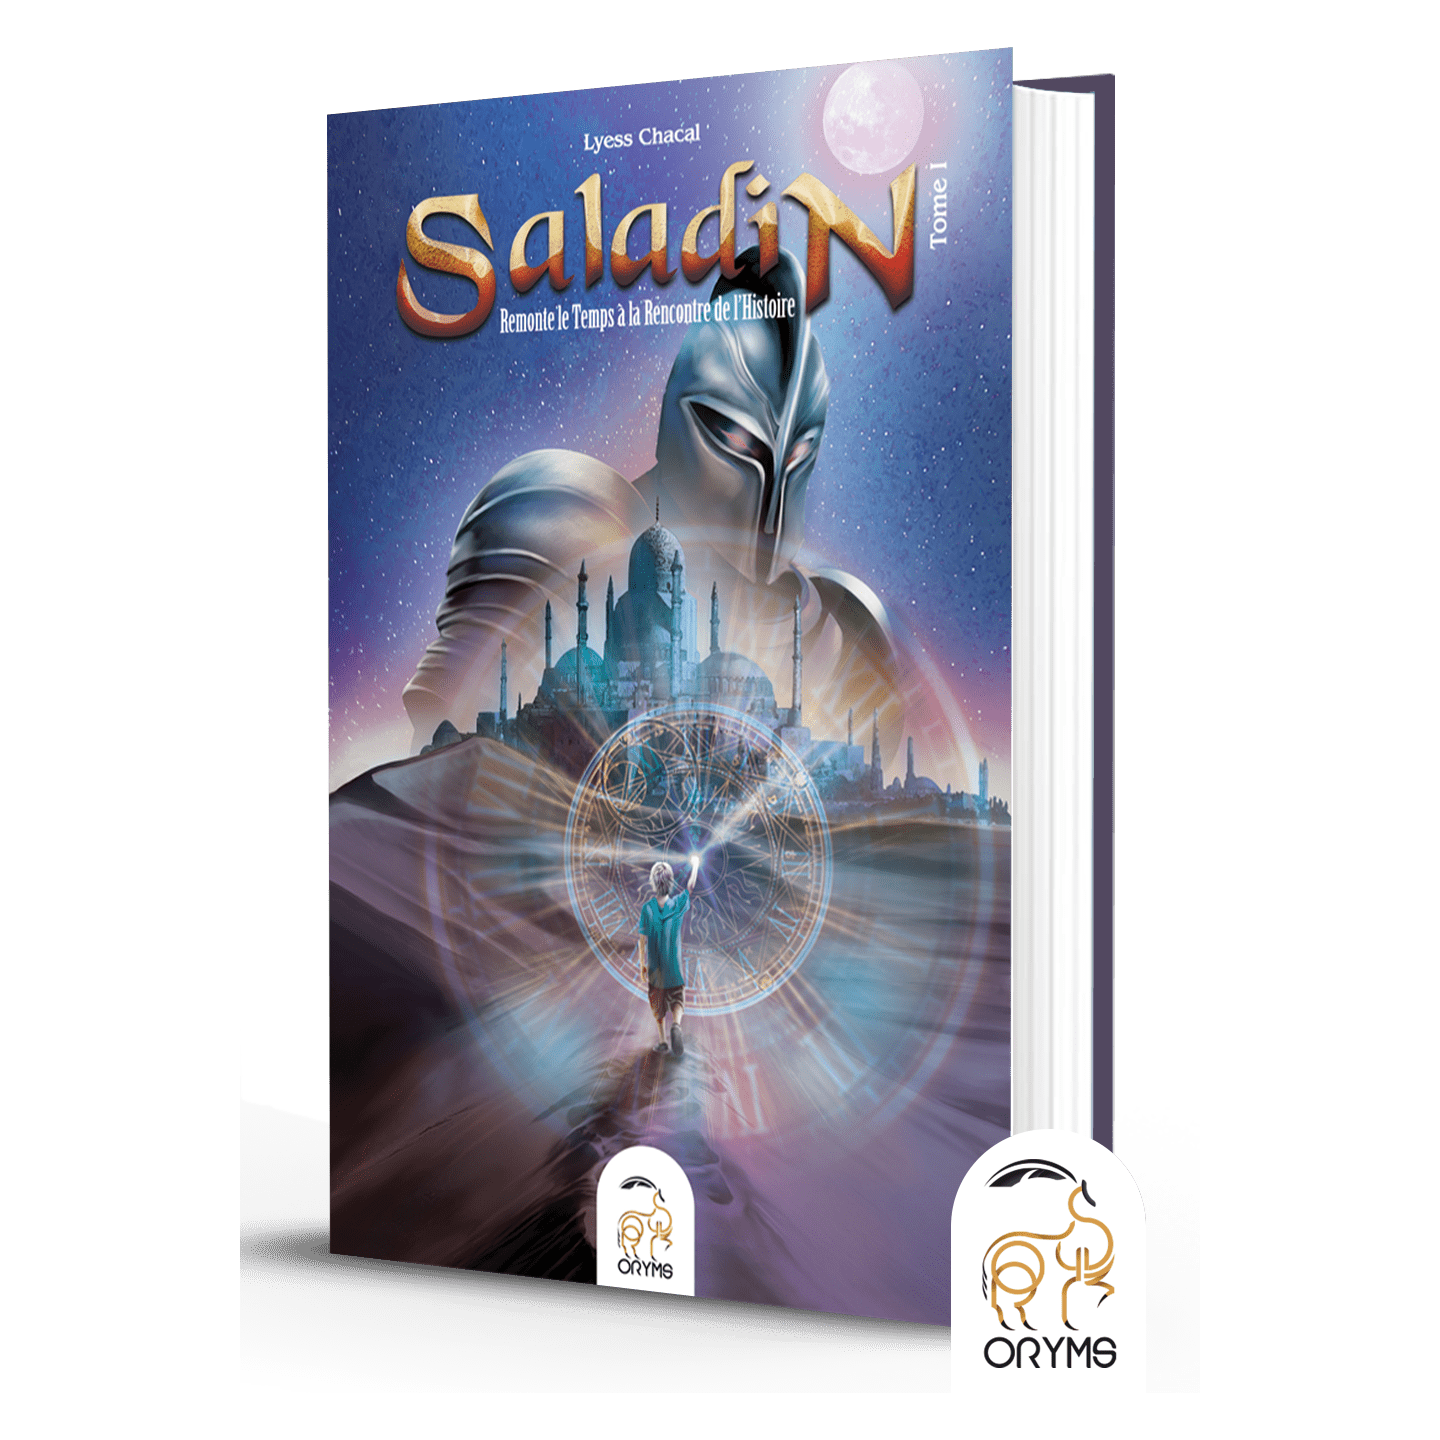 Saladin remonte le temps à la rencontre de l'histoire - Tome 1 - Lyess Chacal